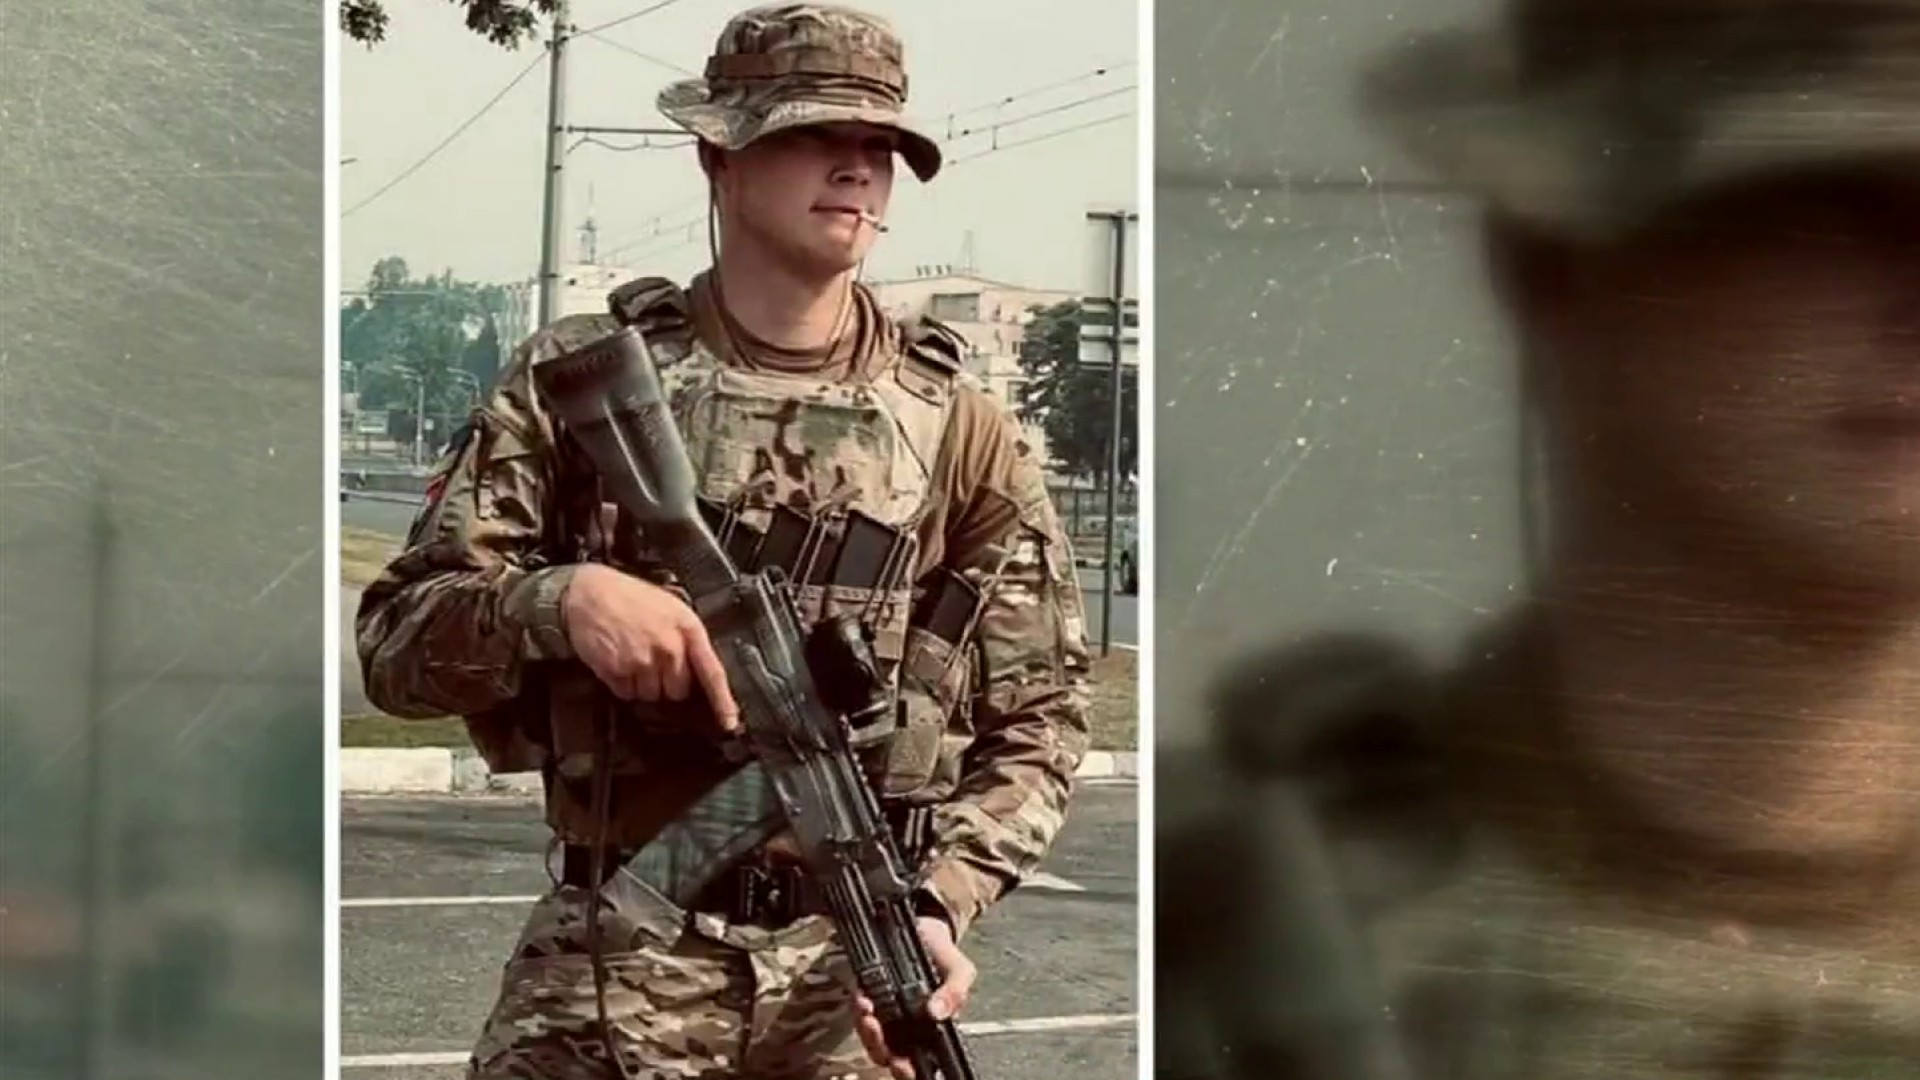 Springfield man, former Marine, dies fighting in Ukraine